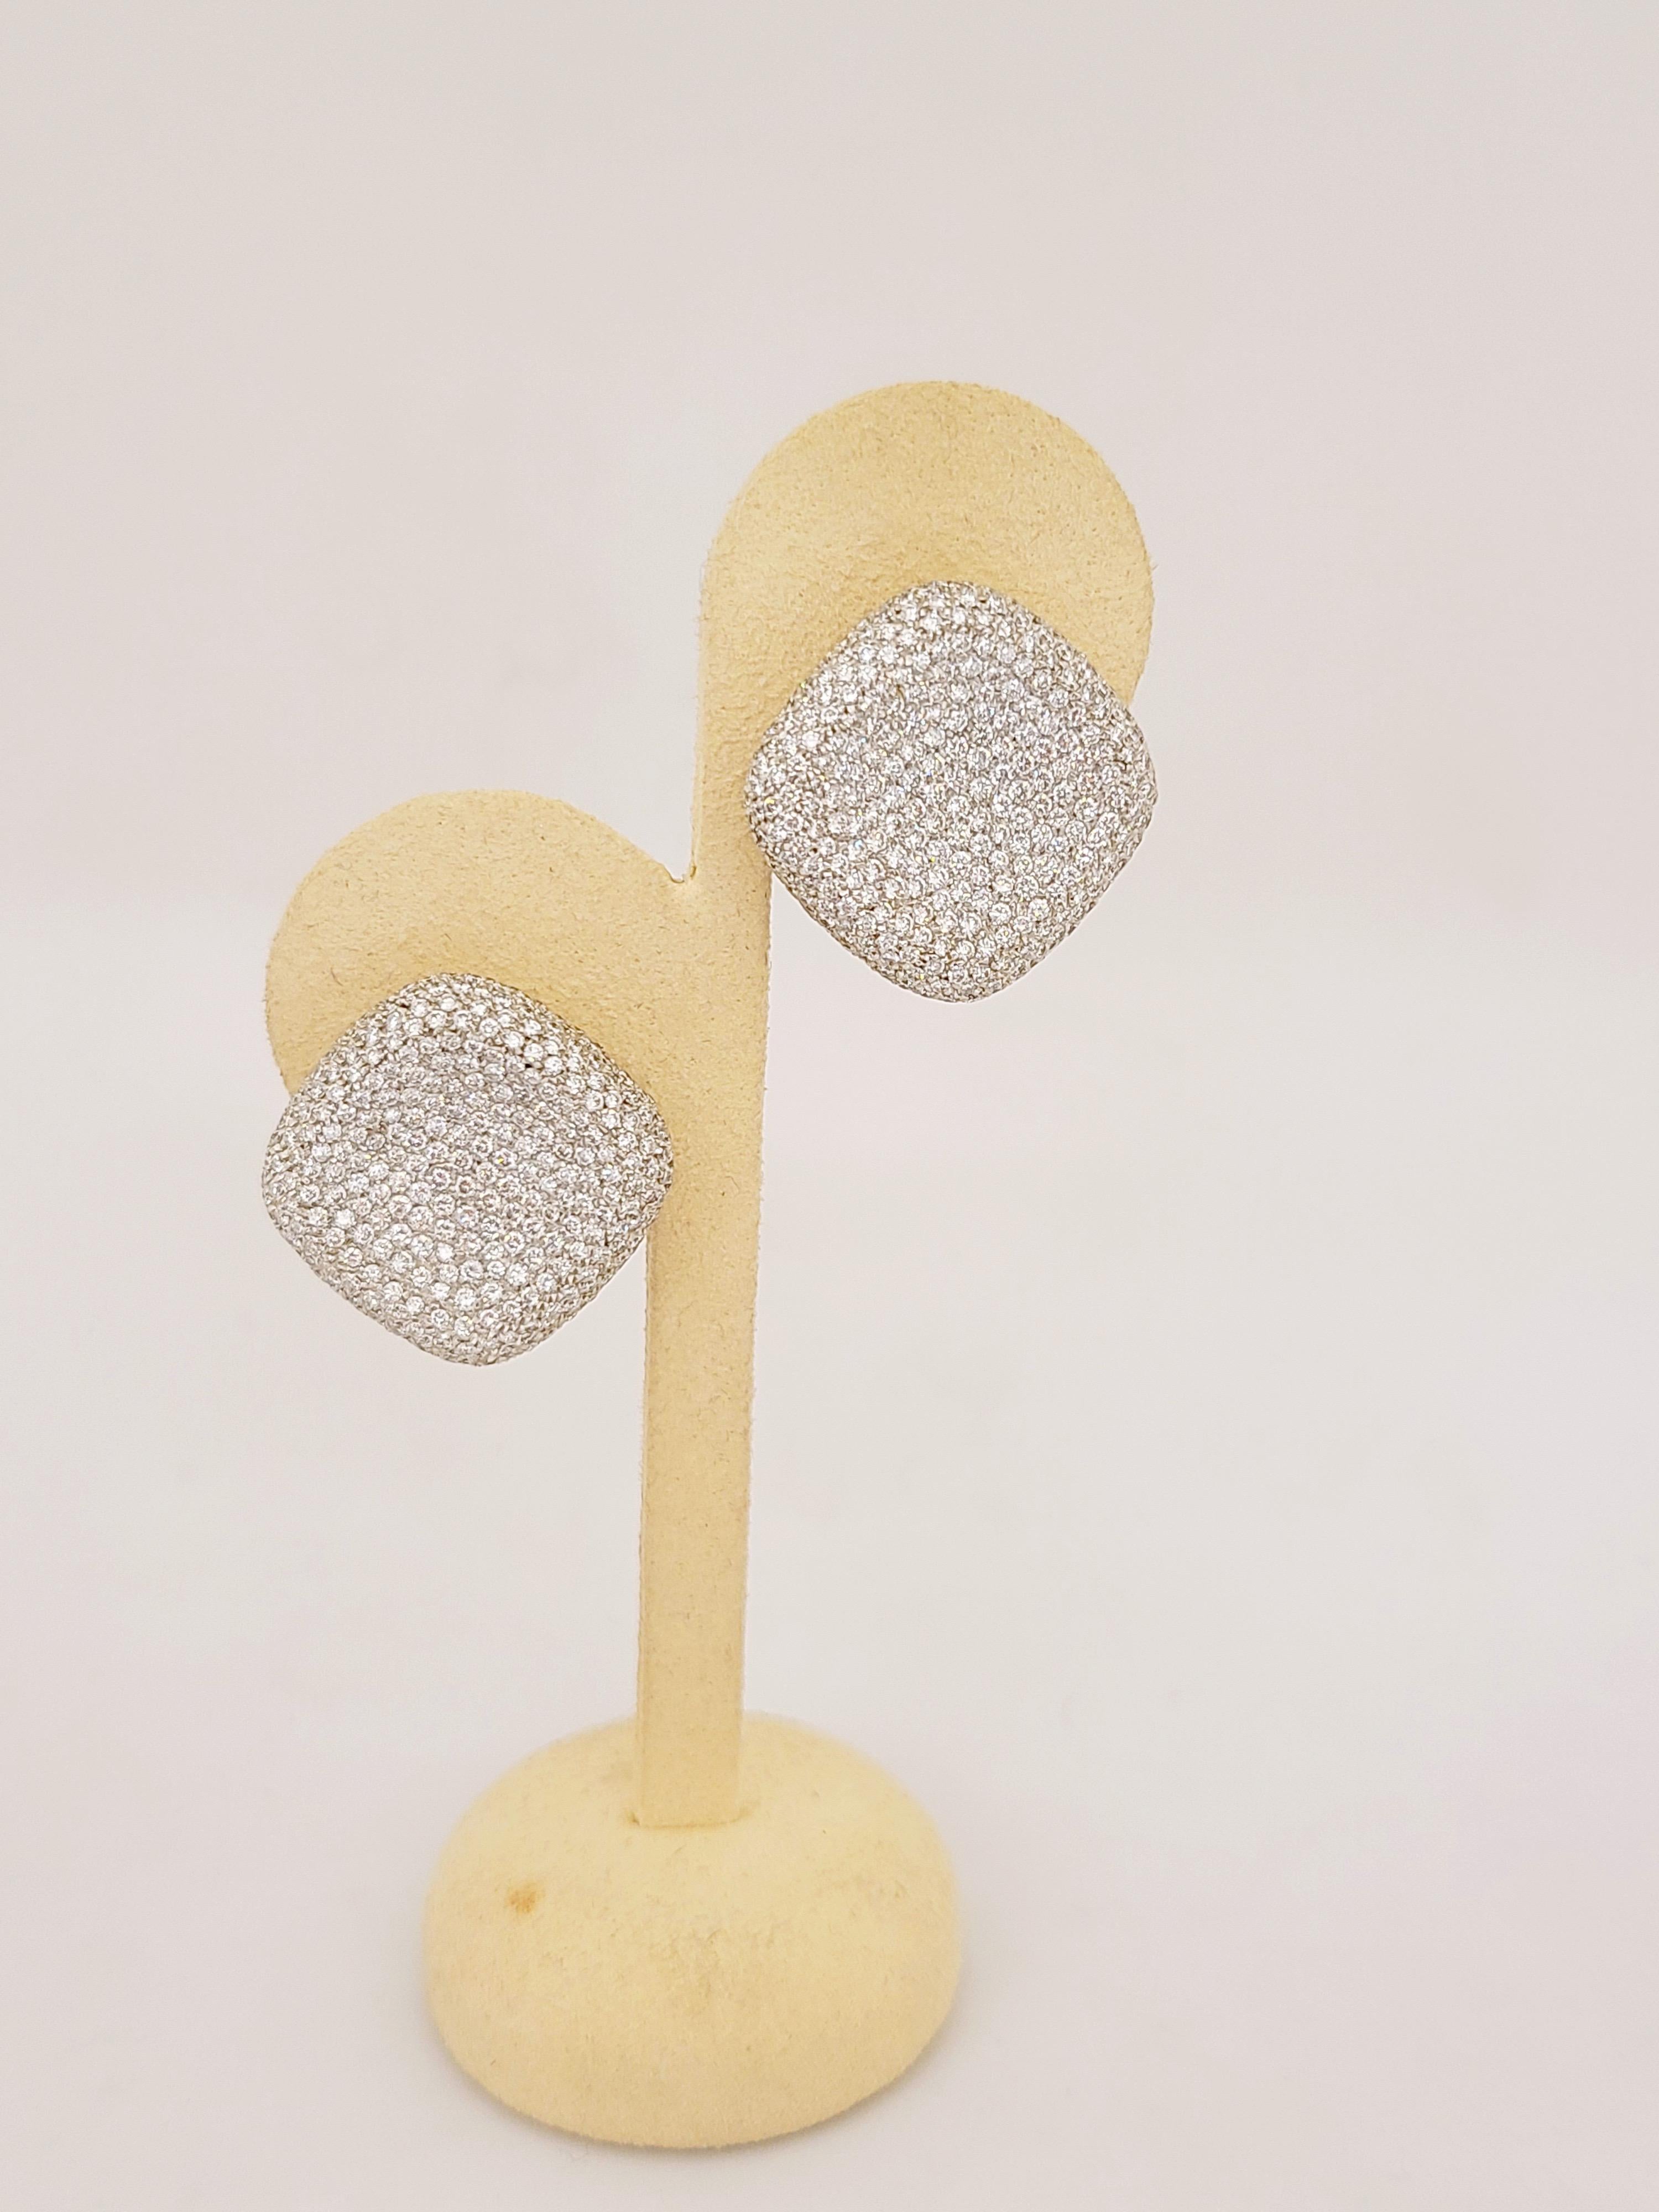 Cellini Jewelers NYC 18KT Weißgold Ohrringe, bestehen aus 6.10CT. runden Brillanten und sind in einem konkaven Kissen geformt, um die Brillanz der Diamanten zu maximieren. Aus jedem Winkel reflektieren die Diamanten das Licht. 
Die Ohrringe messen